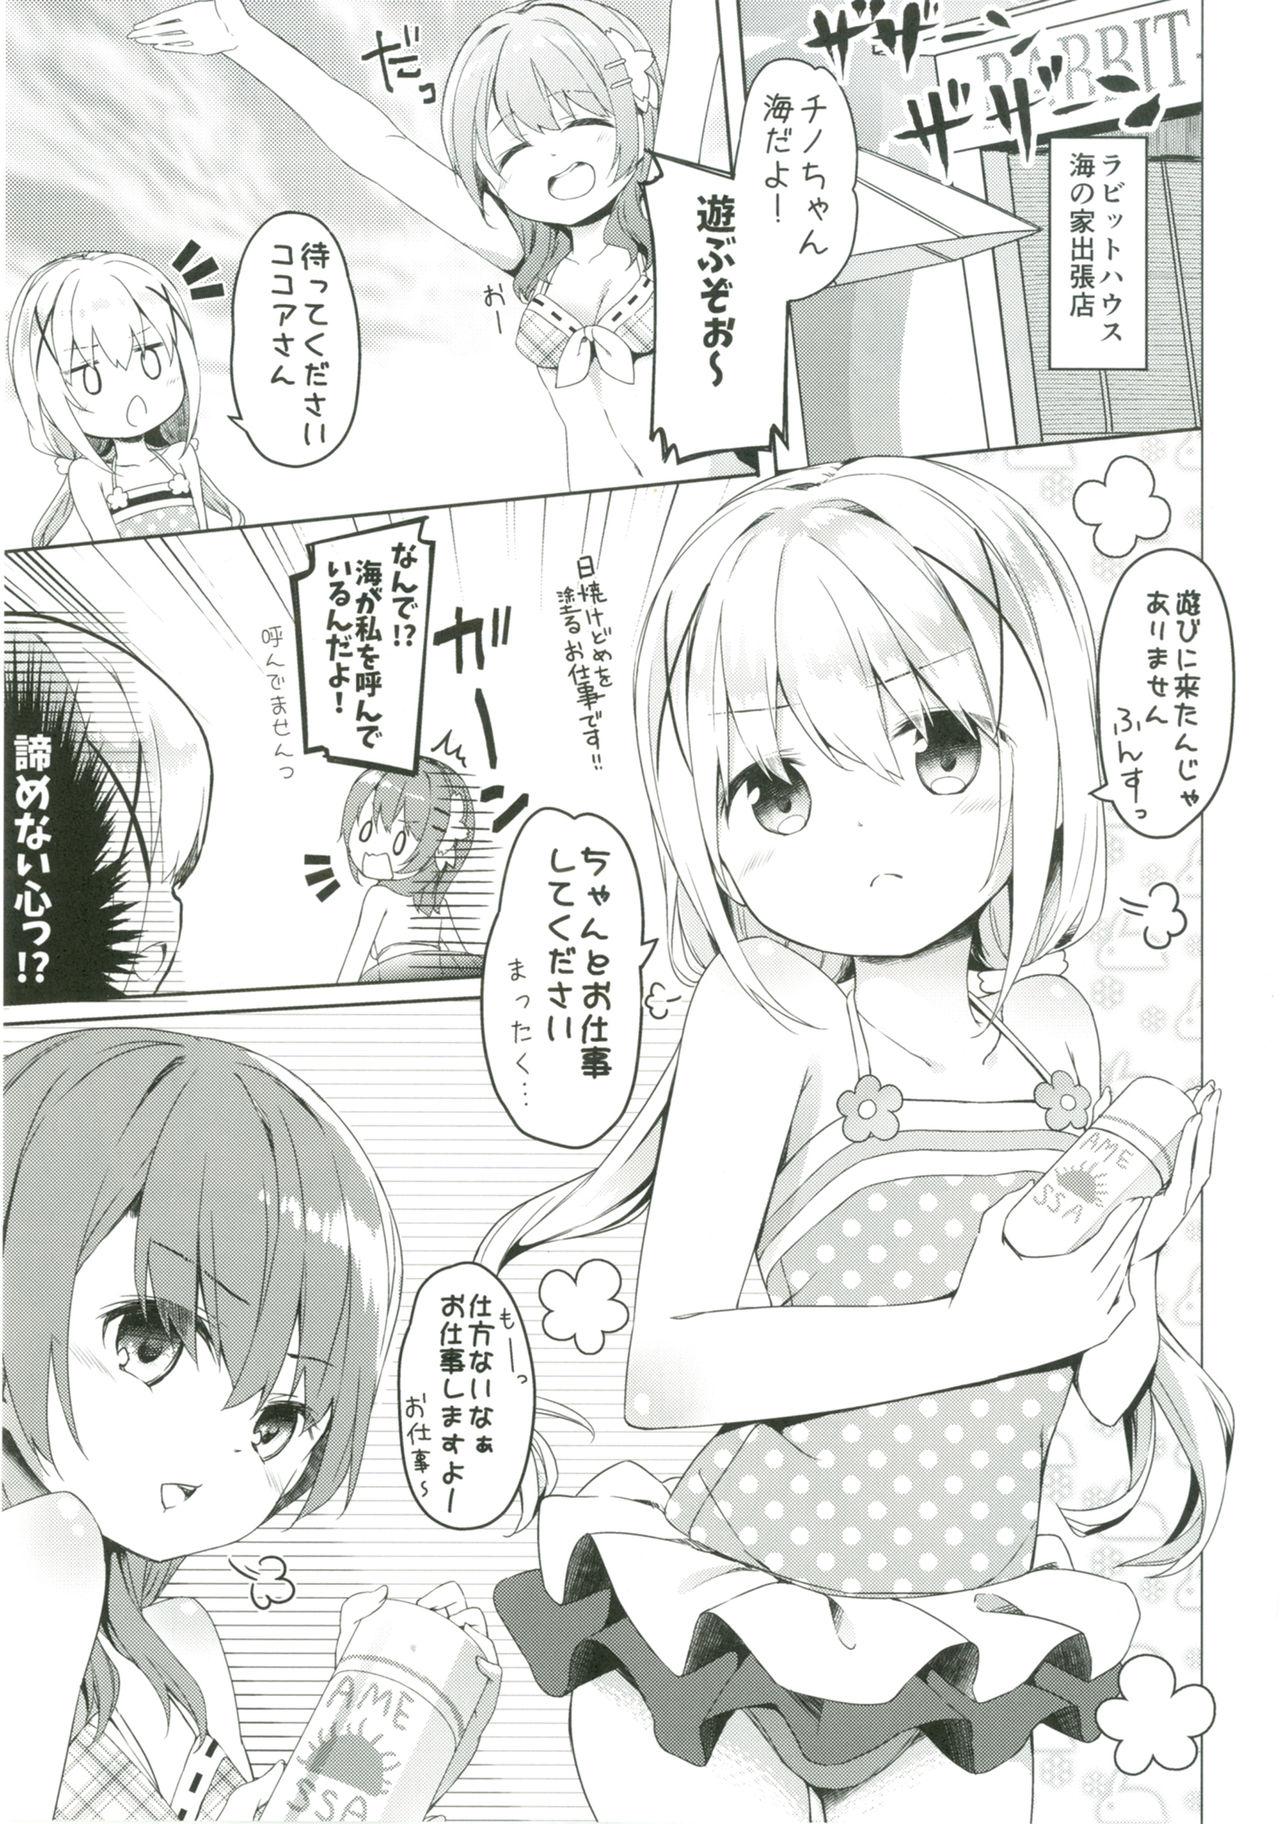 Ass Lick Atataka Hokkori Rabbit House - Gochuumon wa usagi desu ka Con - Page 4